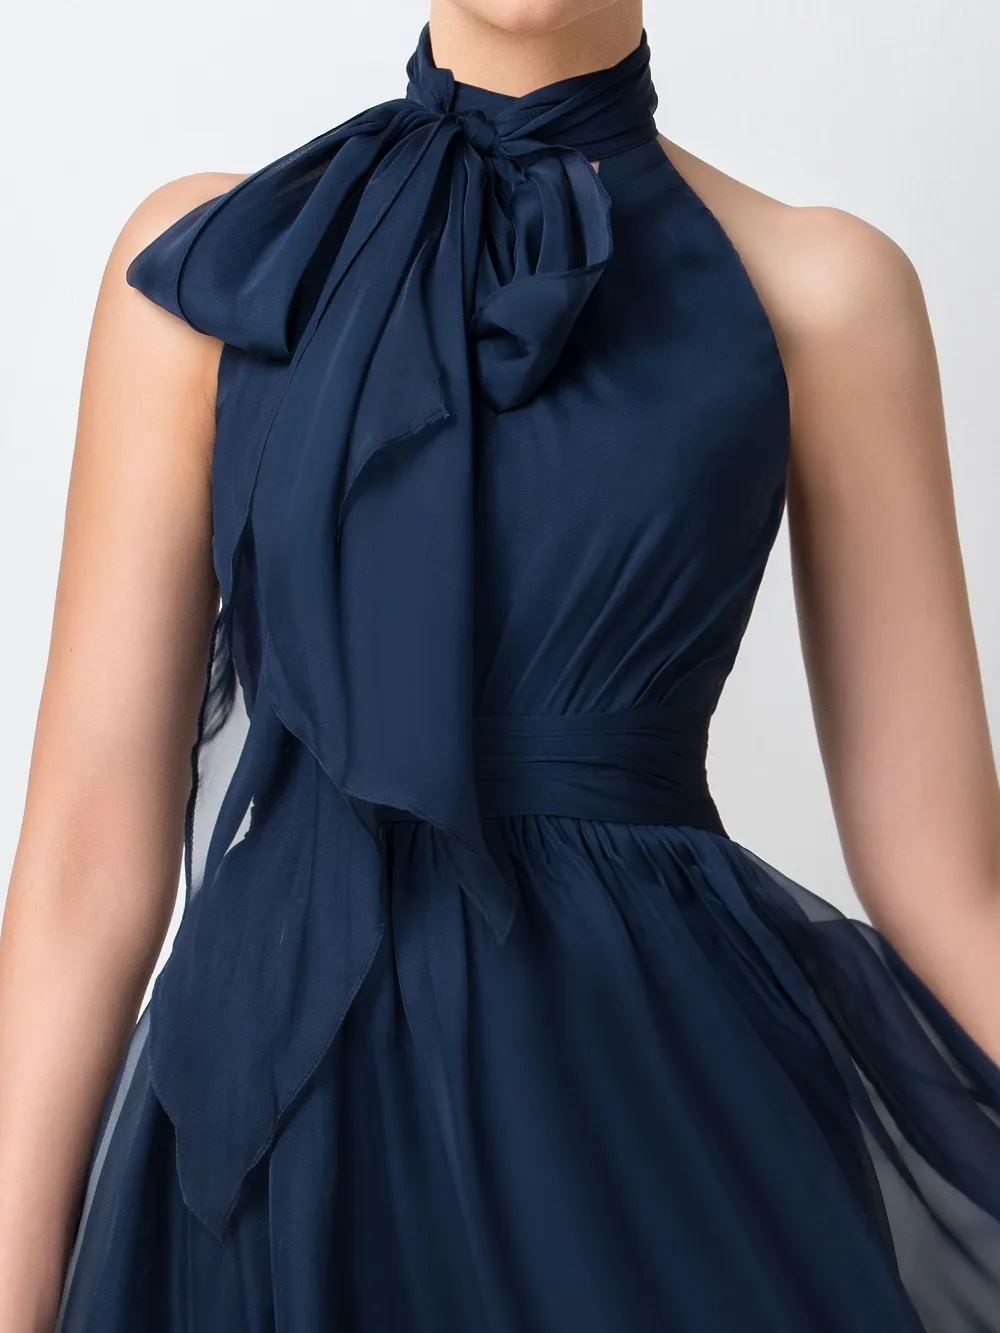 Robe de demoiselle d'honneur courte bleu marine col haut en mousseline de soie robe de demoiselle d'honneur pour la fête de mariage junior Gown245I